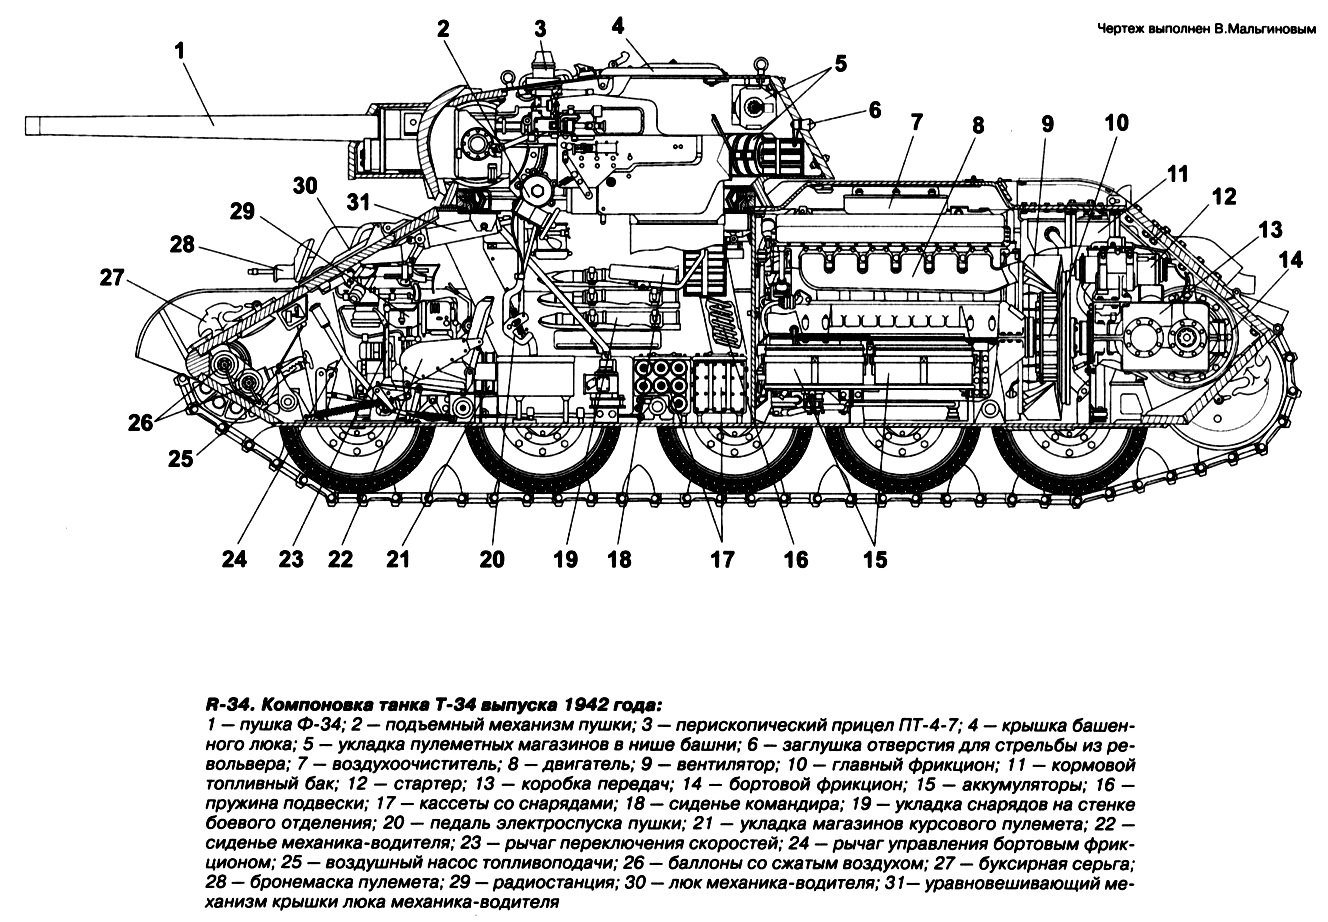 Компоновка Т-34 1942 года выпуска